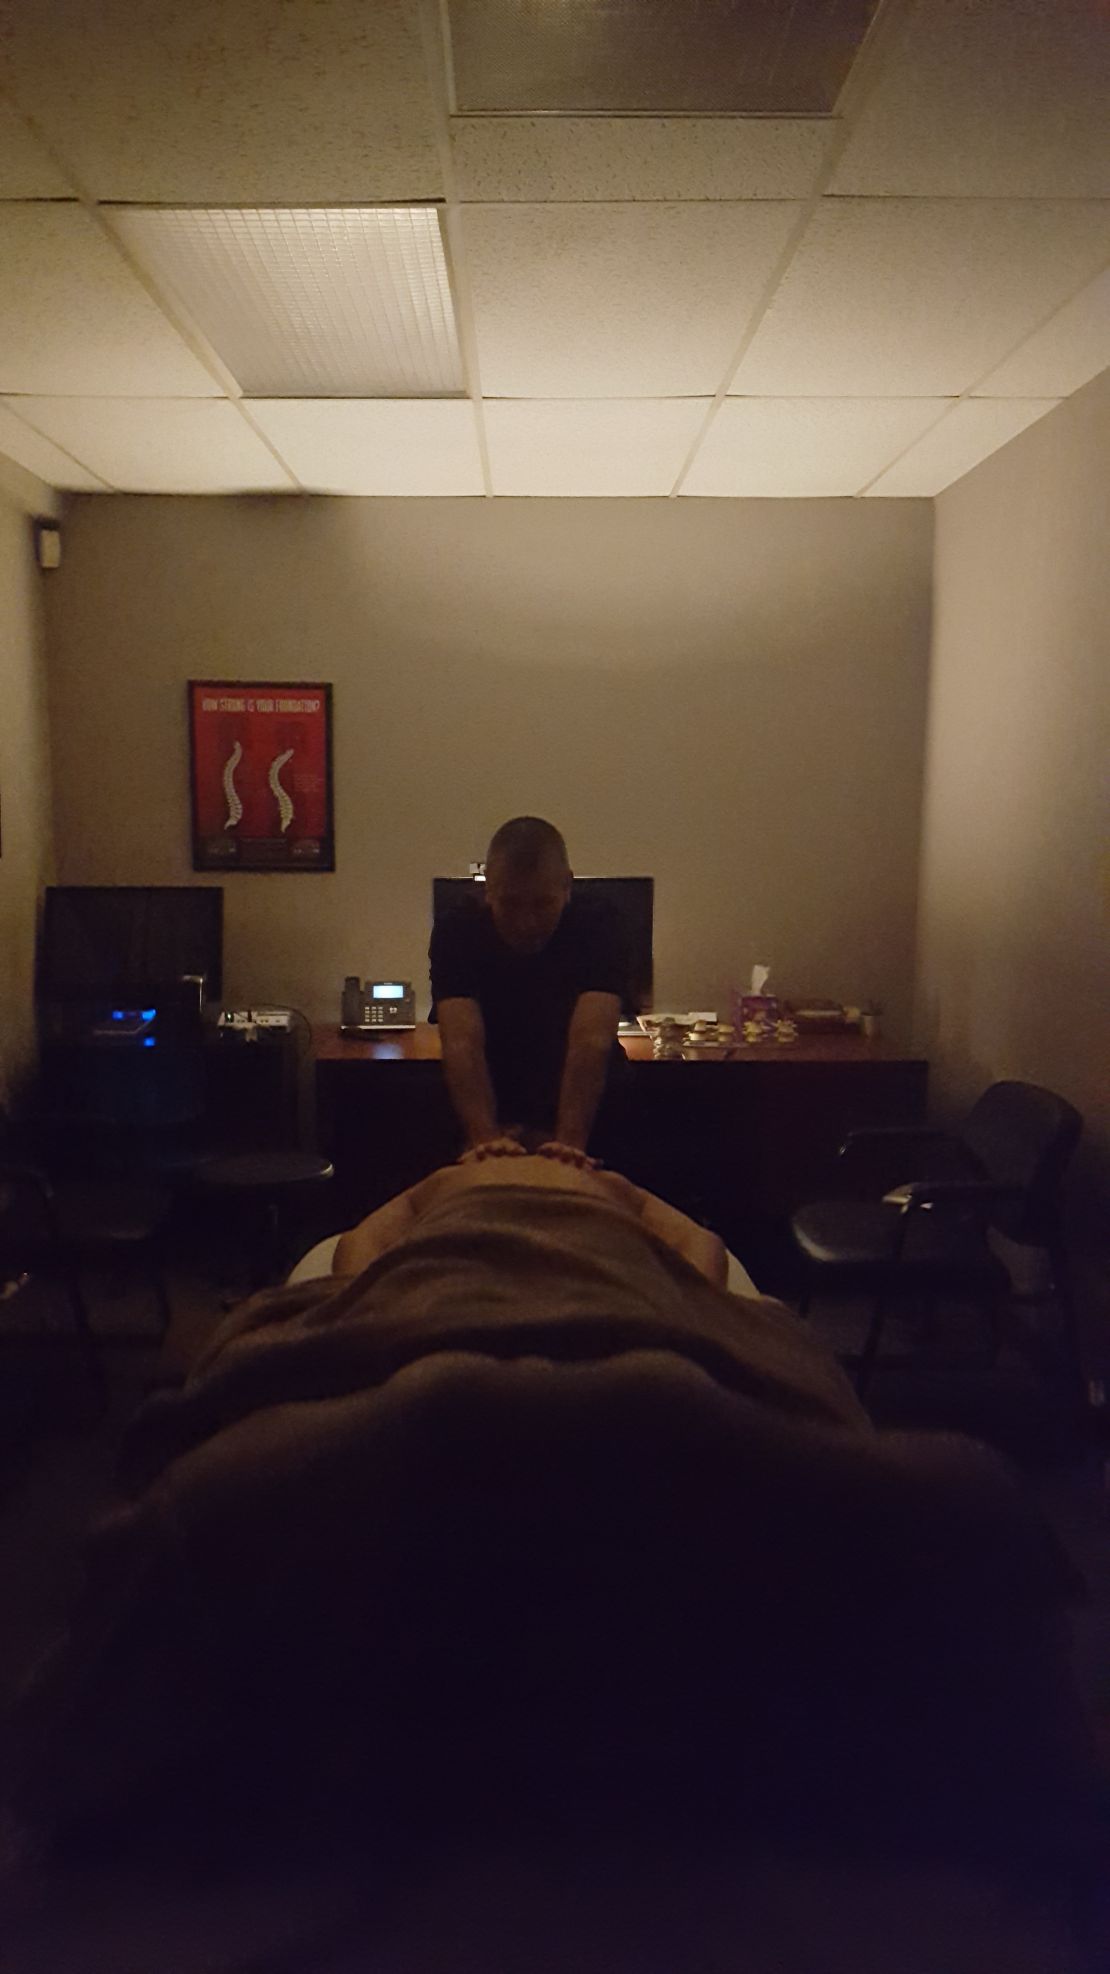 Massage in progress in dimly lit room